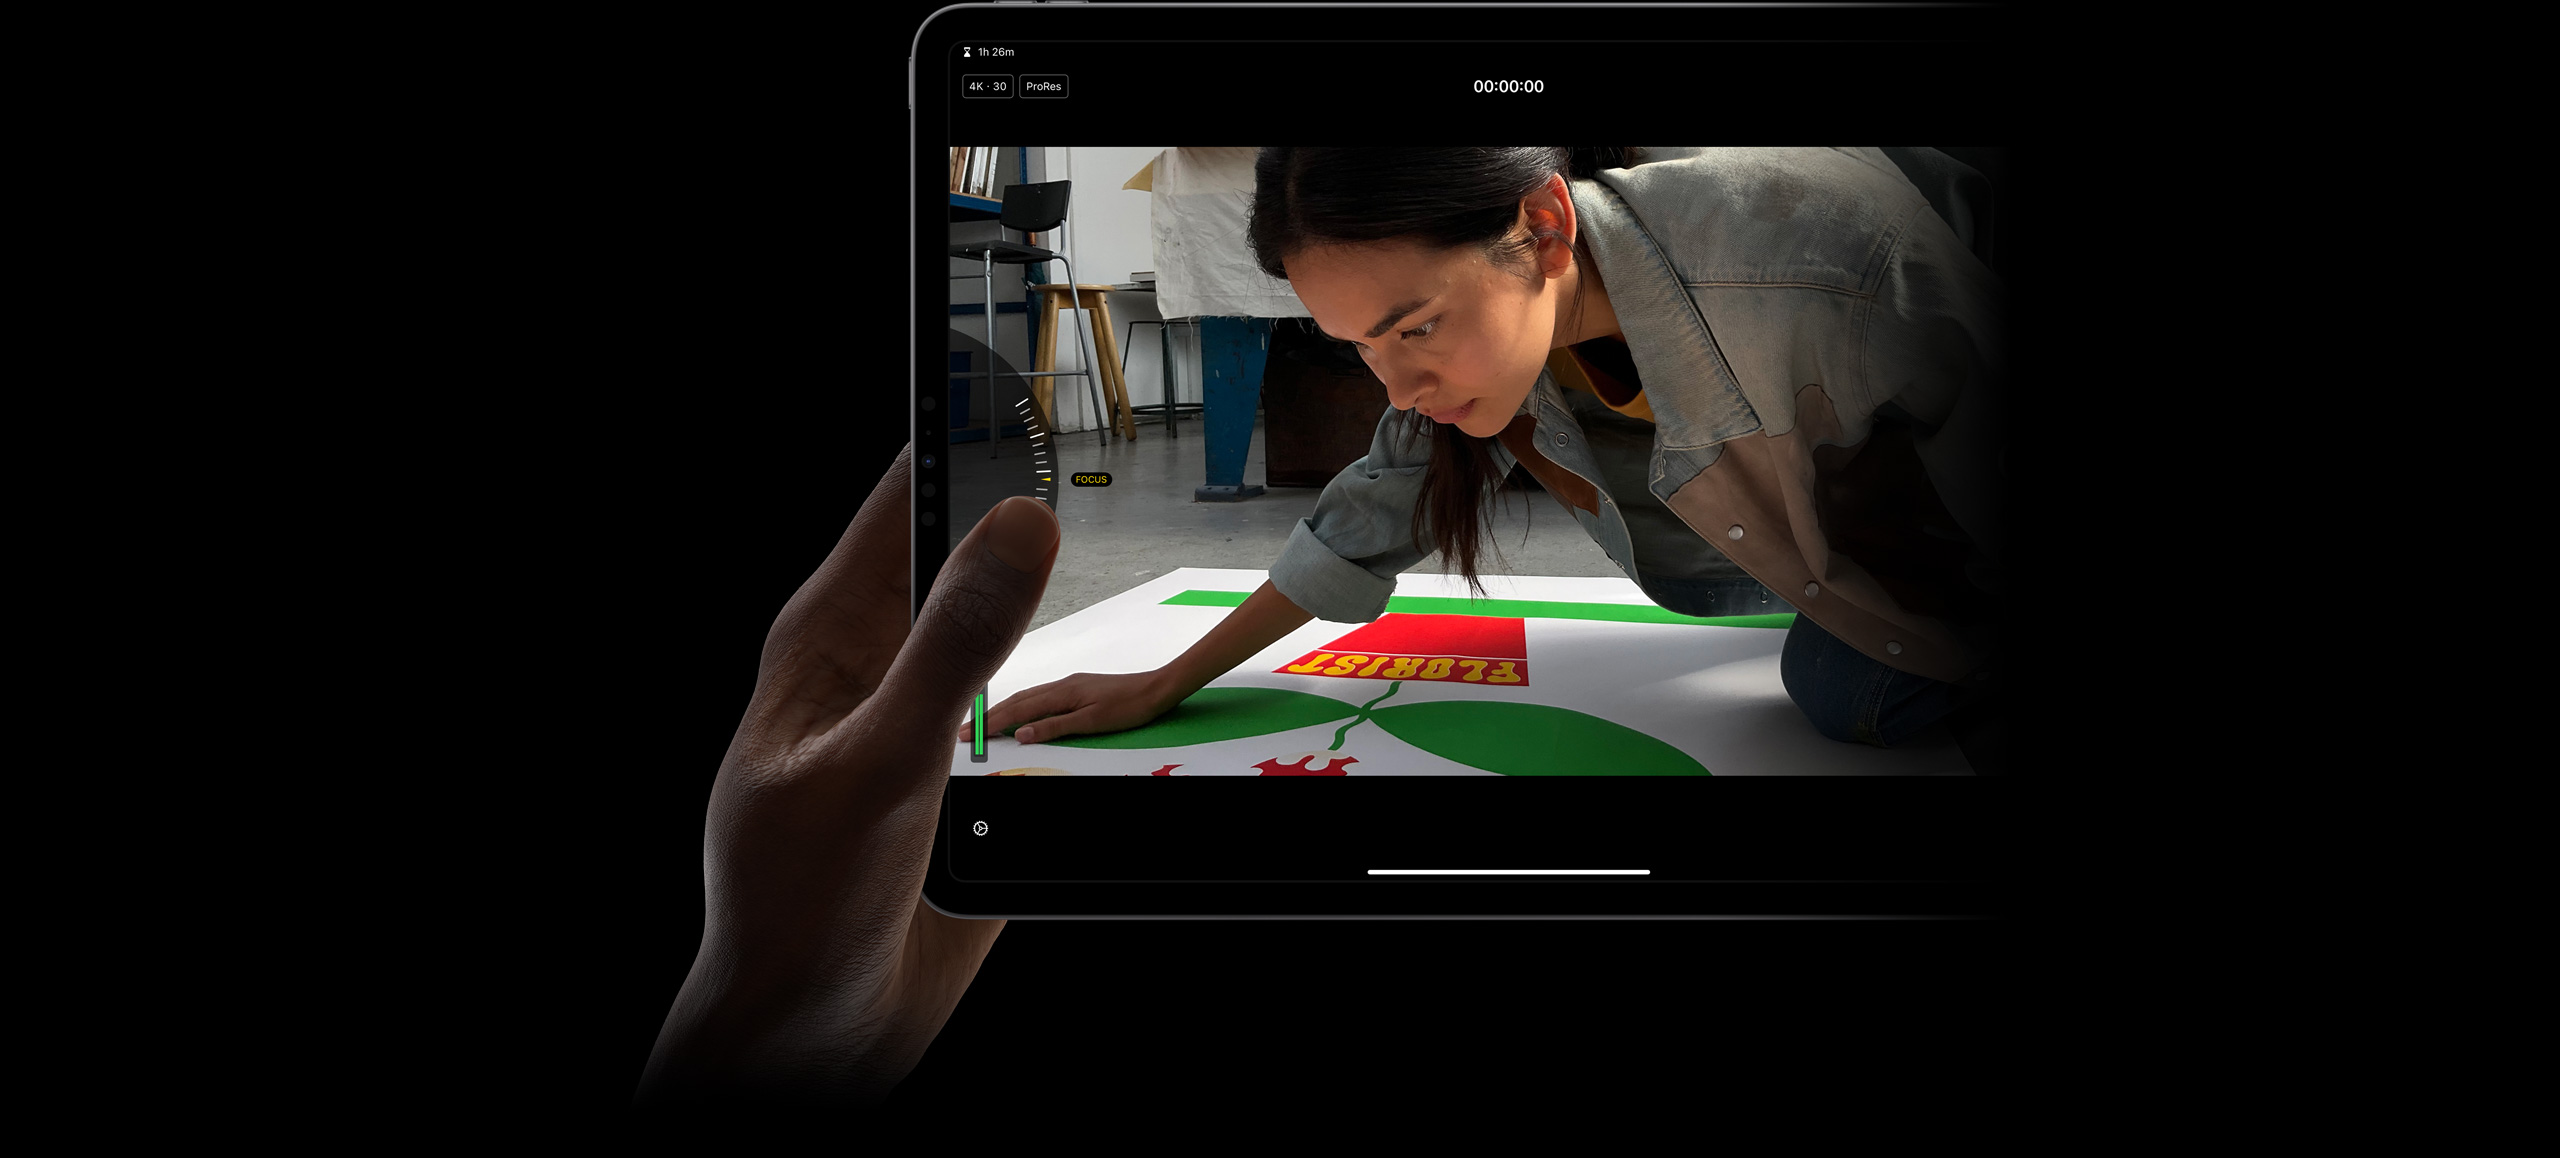 在 iPad Pro 的 iPad 版 Final Cut Pro，拇指正在使用手動專業相機模式的控制，調校 ProRes 影片的對焦。